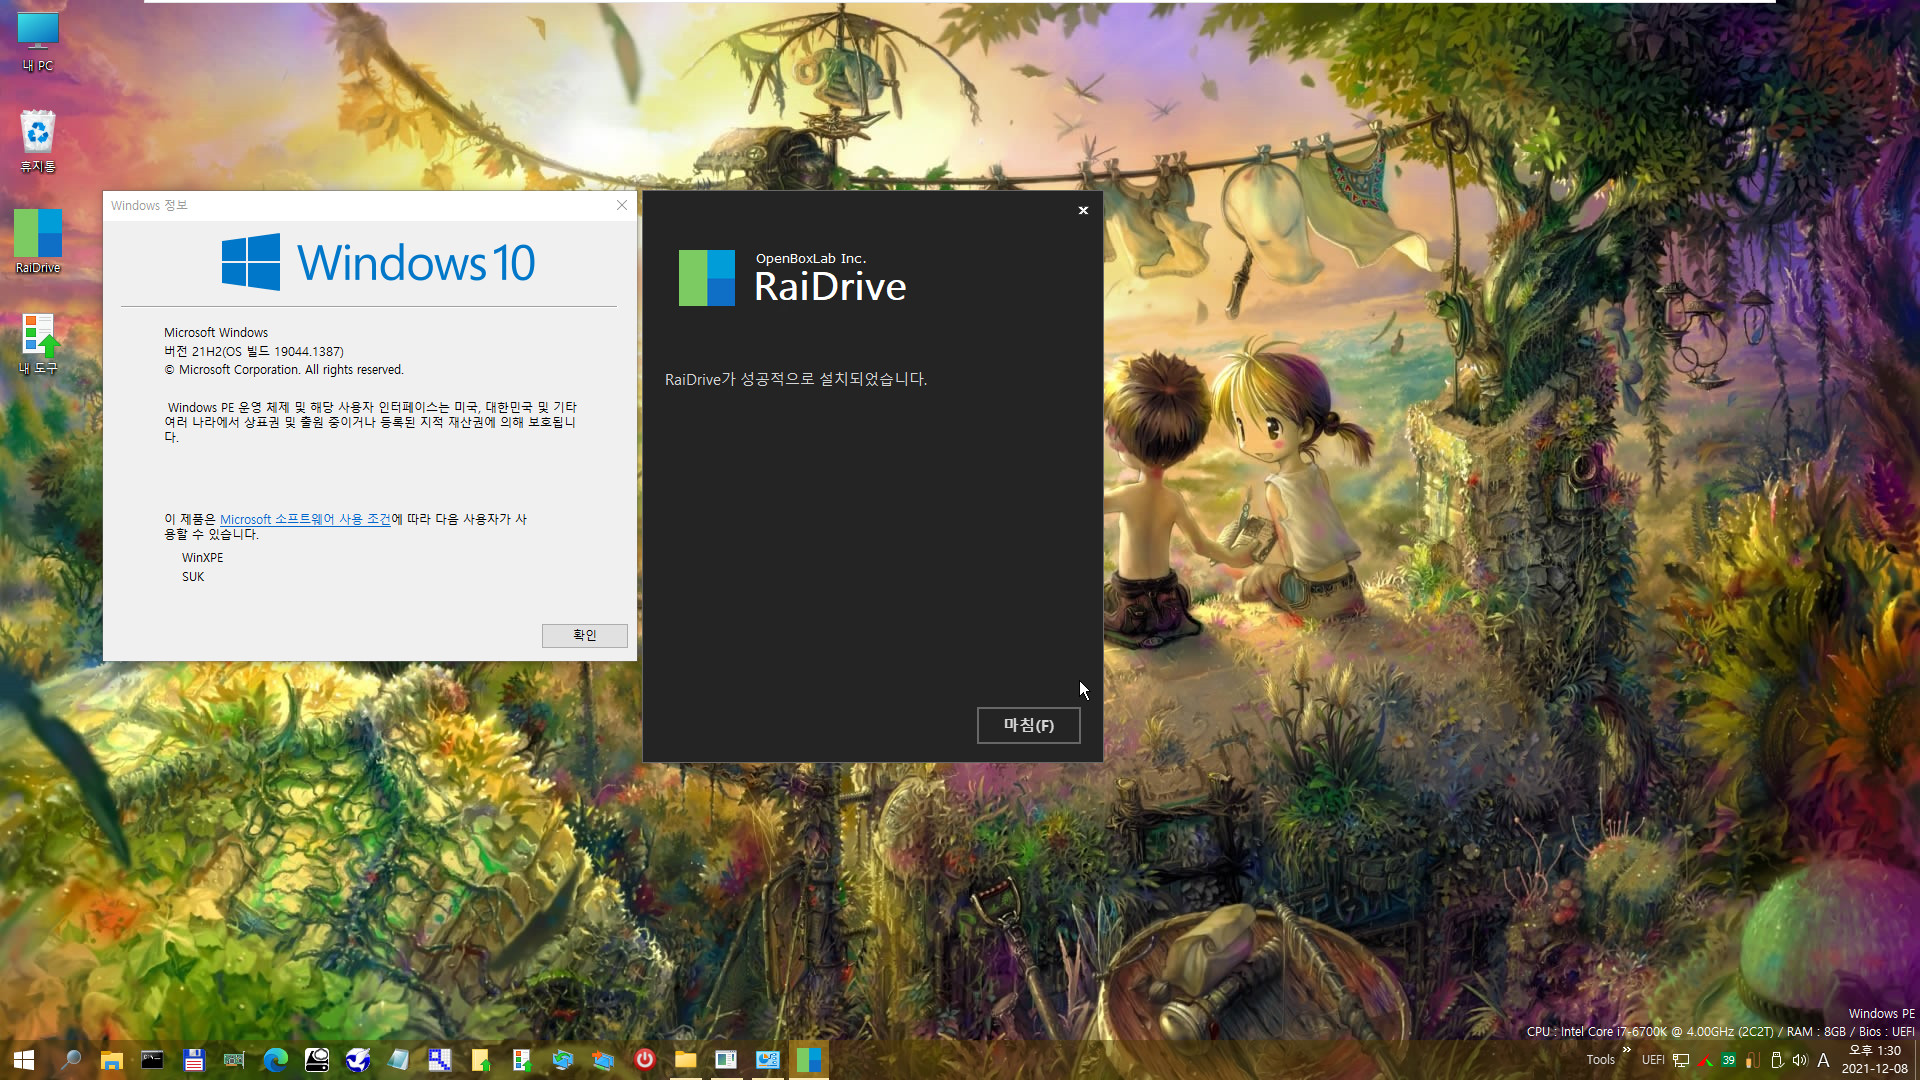 PE에서 RaiDrive 첫 설치 테스트 - WindowsXPE132 으로 Windows 10 (19044.1387) 통합본으로 PE 만들어서 테스트 - 여러번 시도하여 성공함 2021-12-08_133034.jpg